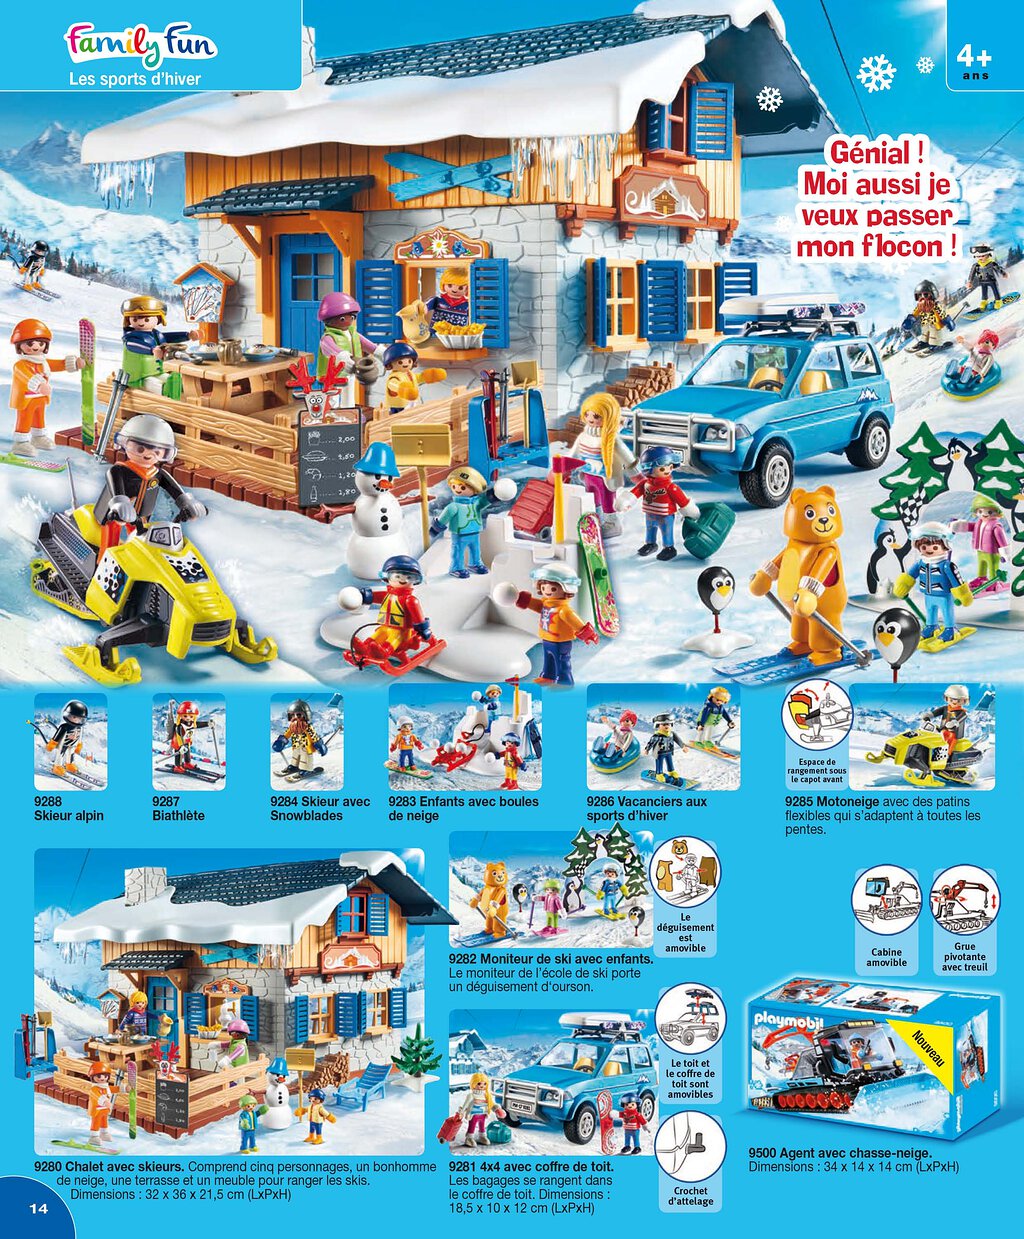 Chalet Playmobil 9280 *NOUVEAU* Monde du sport d'hiver avec skieurs et  bonhomme de neige 